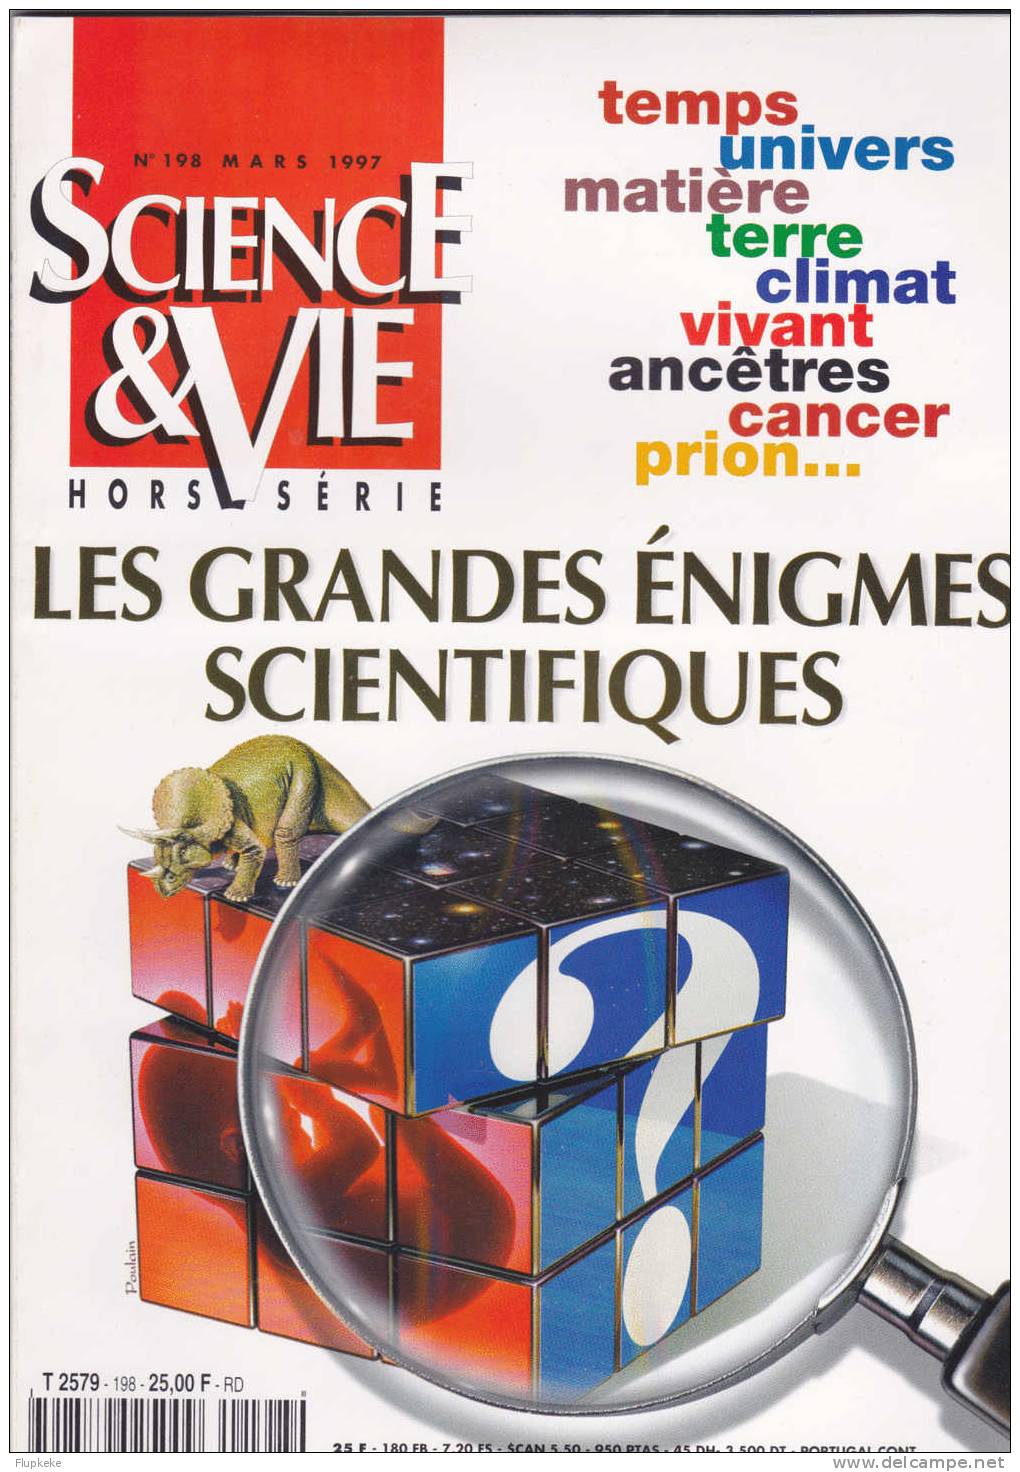 Science Et Vie HS 198 Mars 1997 Les Grandes Enigmes Scientifiques Temps Matière Terre Climat Vivant Ancêtres Cancer - Ciencia